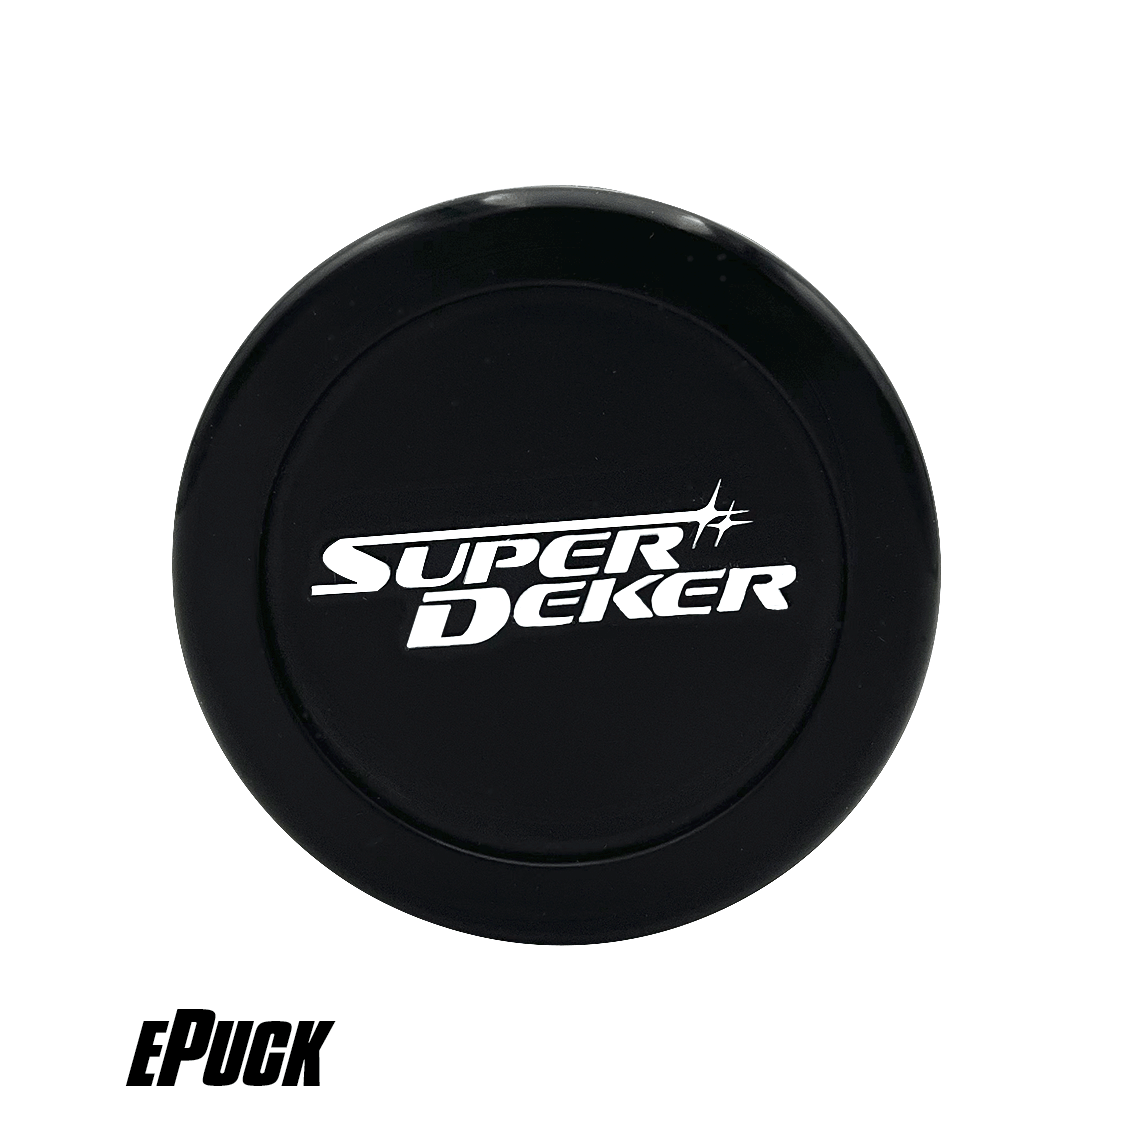 Find SuperDeker Replacement Parts like this Super Deker ePuck for stickhandling training on SuperDeker.com.